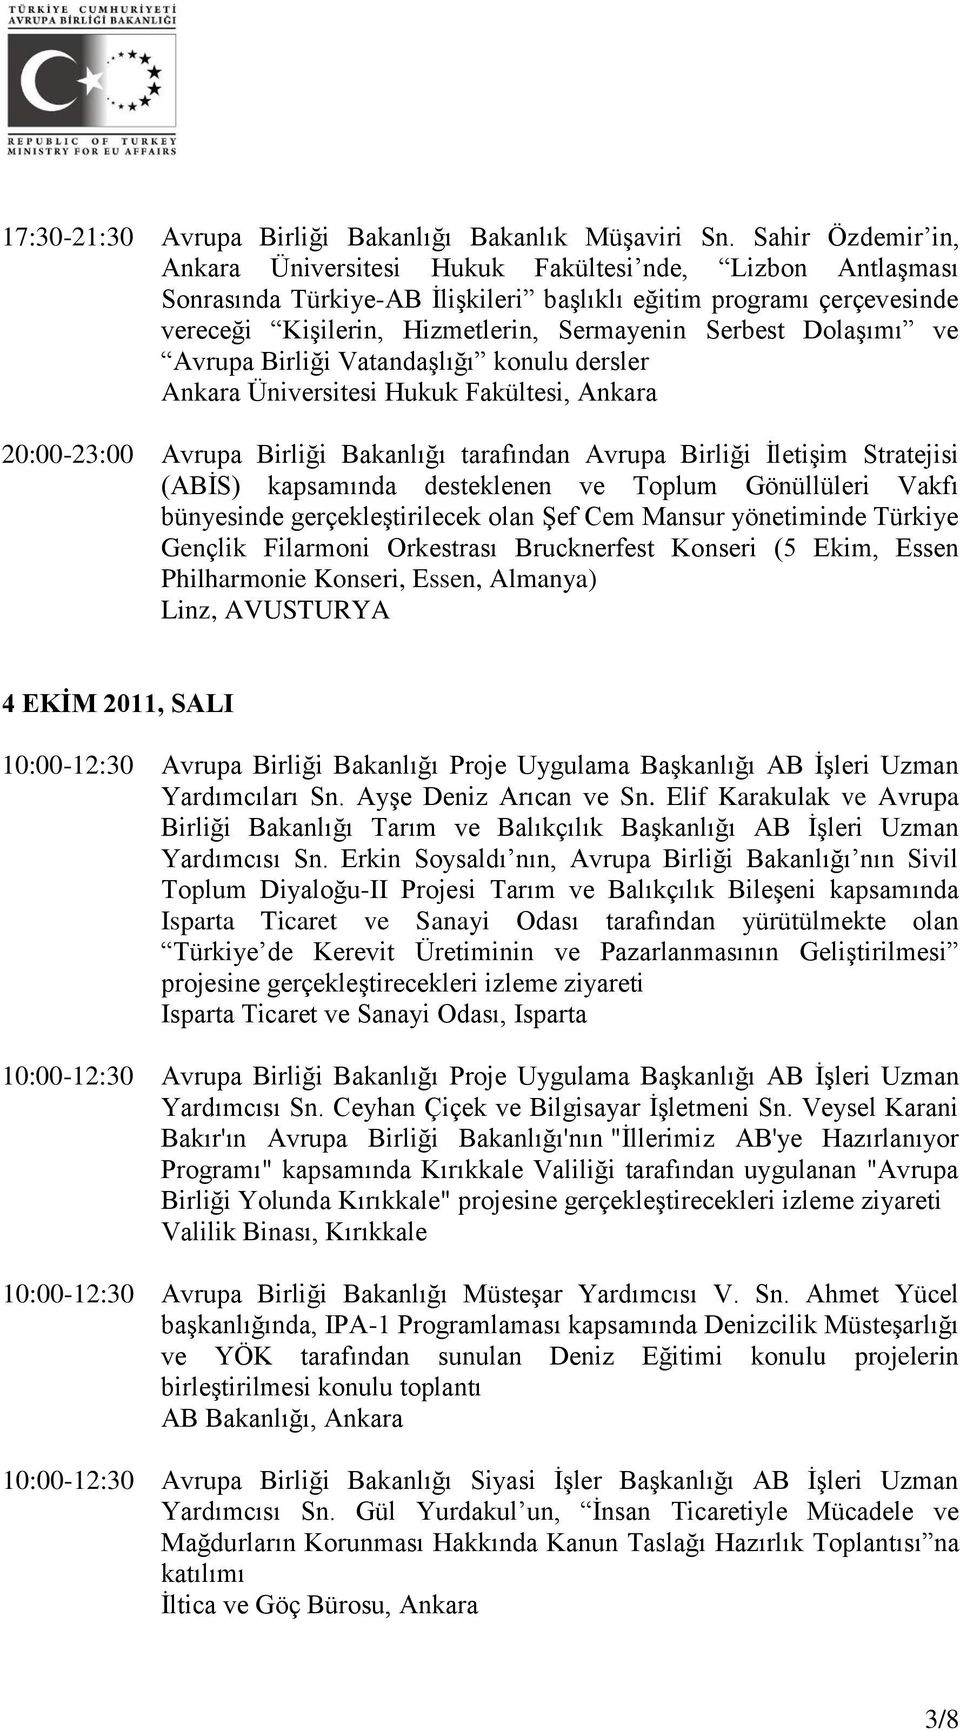 Dolaşımı ve Avrupa Birliği Vatandaşlığı konulu dersler Ankara Üniversitesi Hukuk Fakültesi, Ankara 20:00-23:00 Avrupa Birliği Bakanlığı tarafından Avrupa Birliği İletişim Stratejisi (ABİS) kapsamında